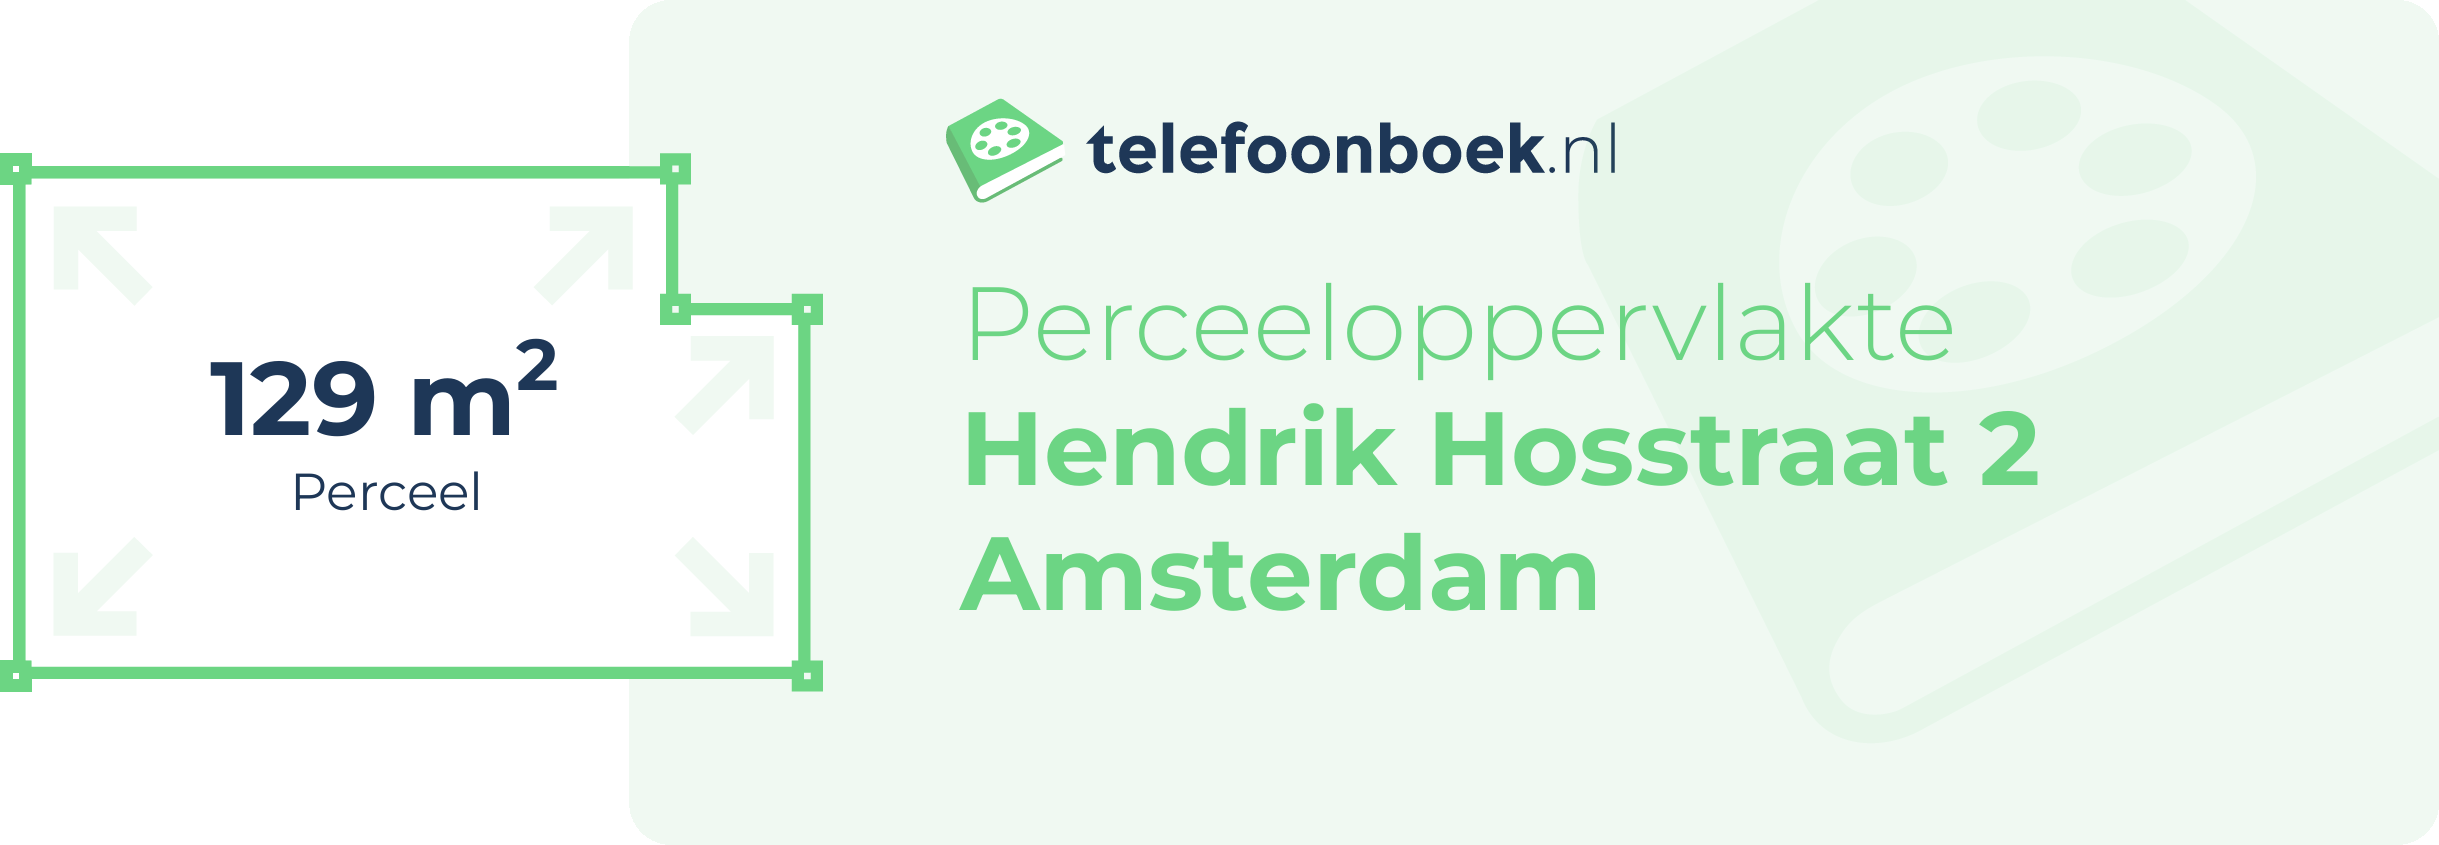 Perceeloppervlakte Hendrik Hosstraat 2 Amsterdam